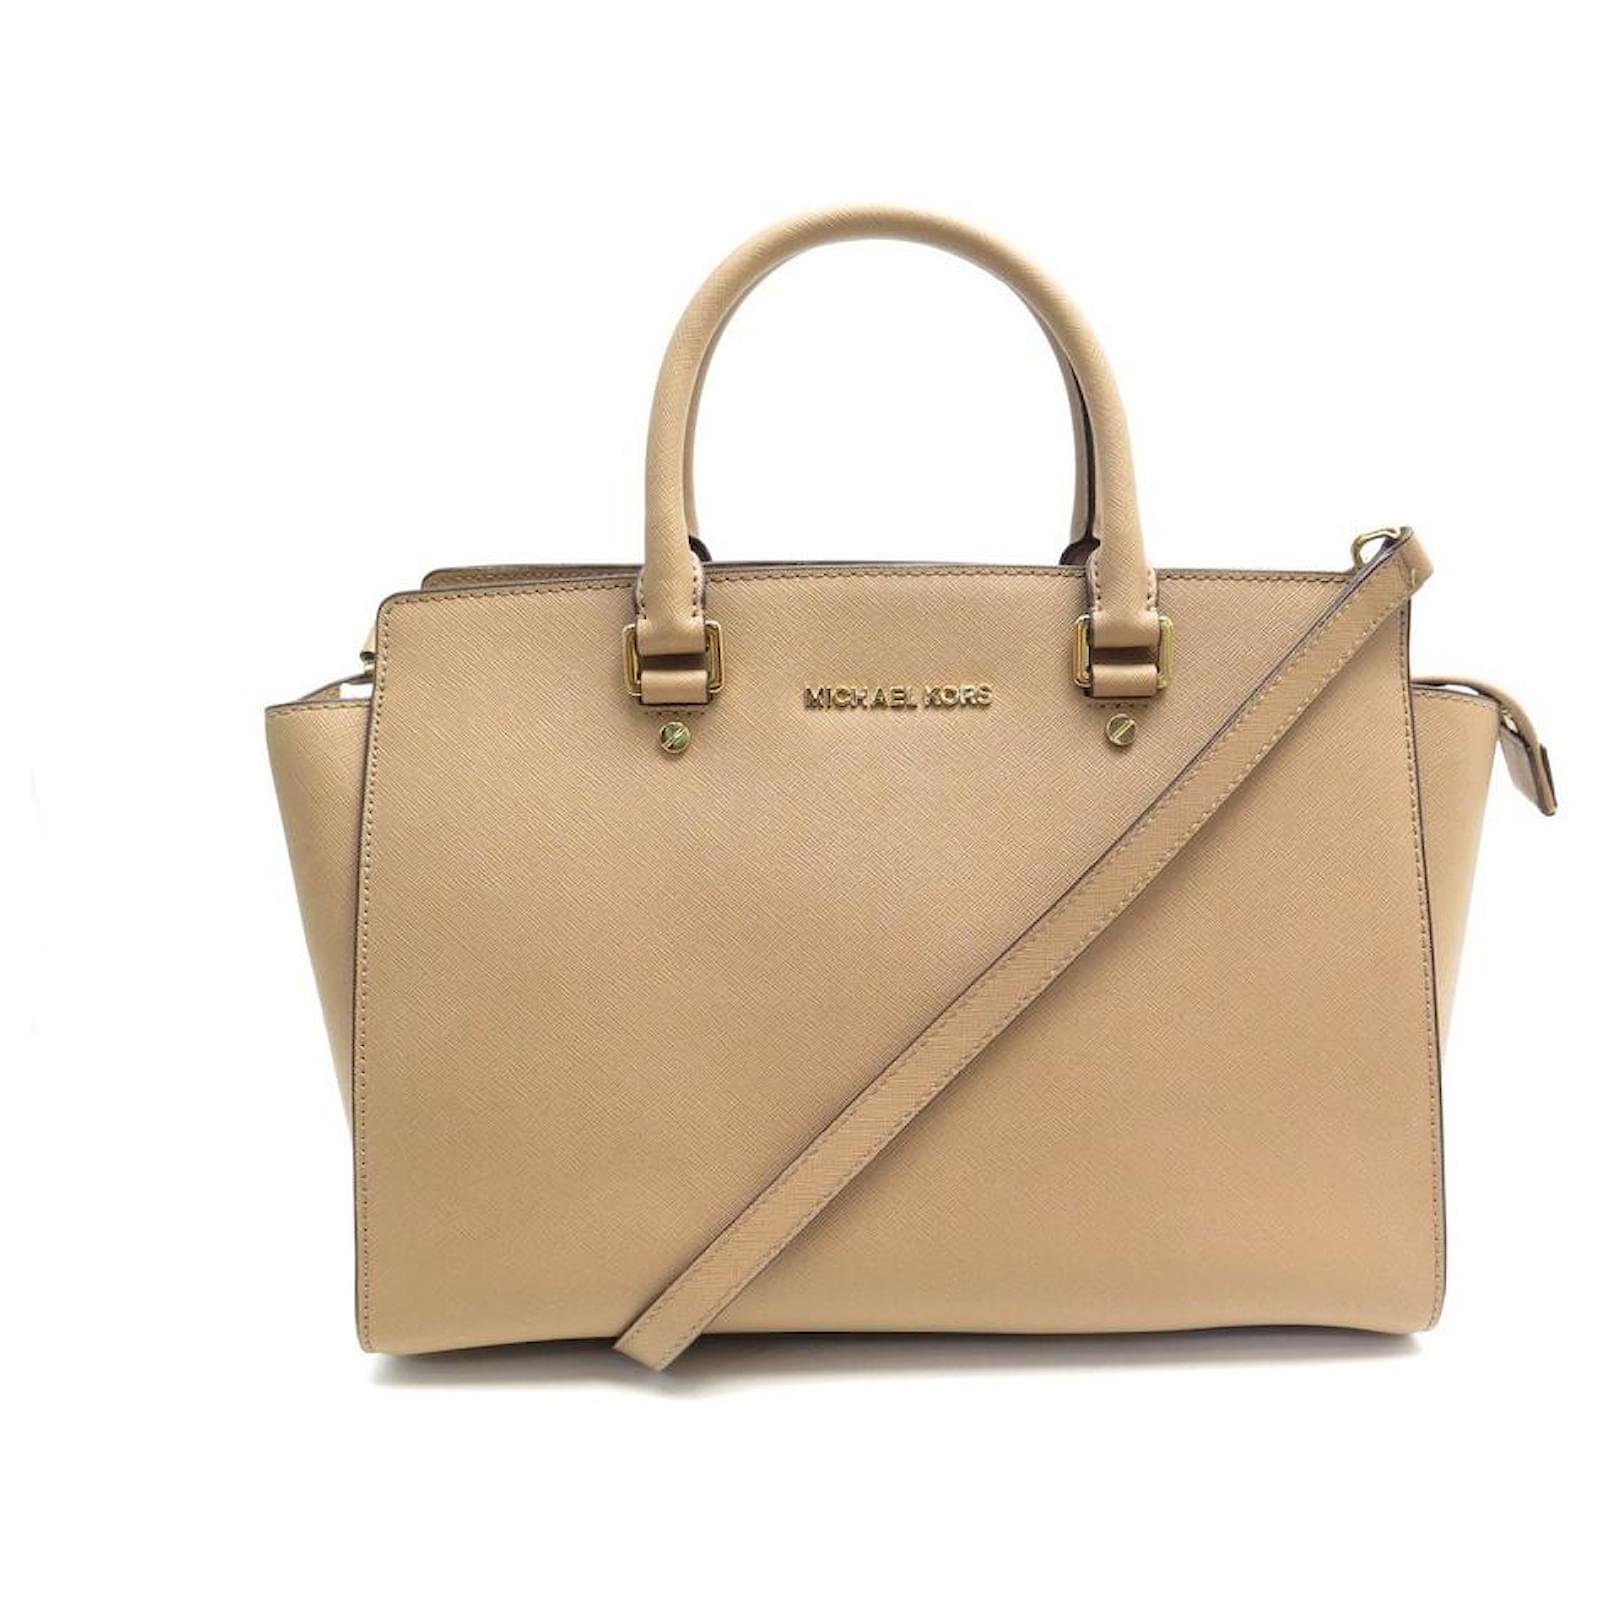 Michael Kors Selma Satchel/Top Handle Bag Large Bags & Handbags